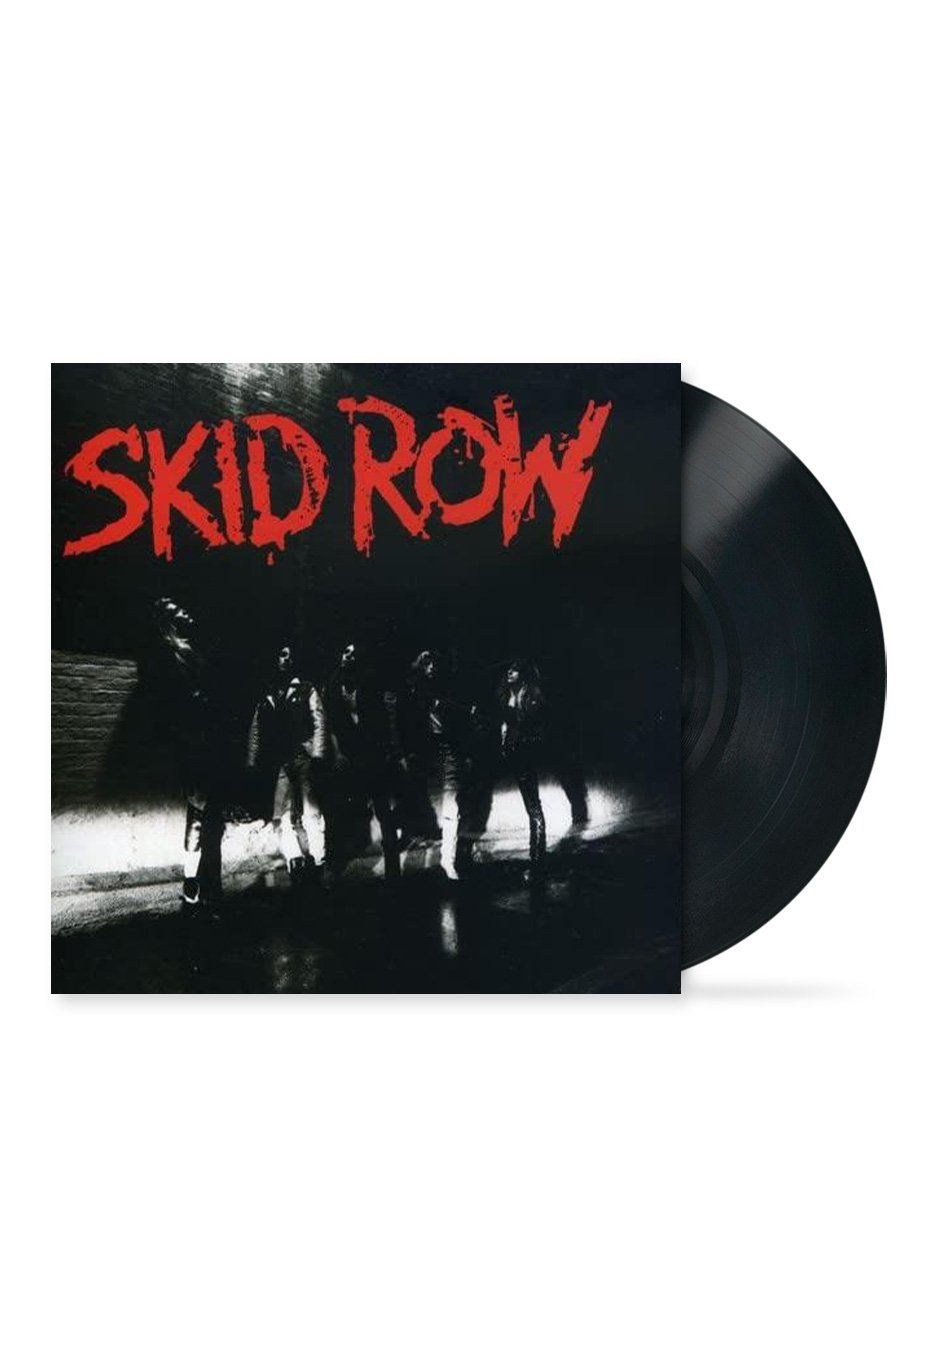 Skid Row - Skid Row - Vinyl